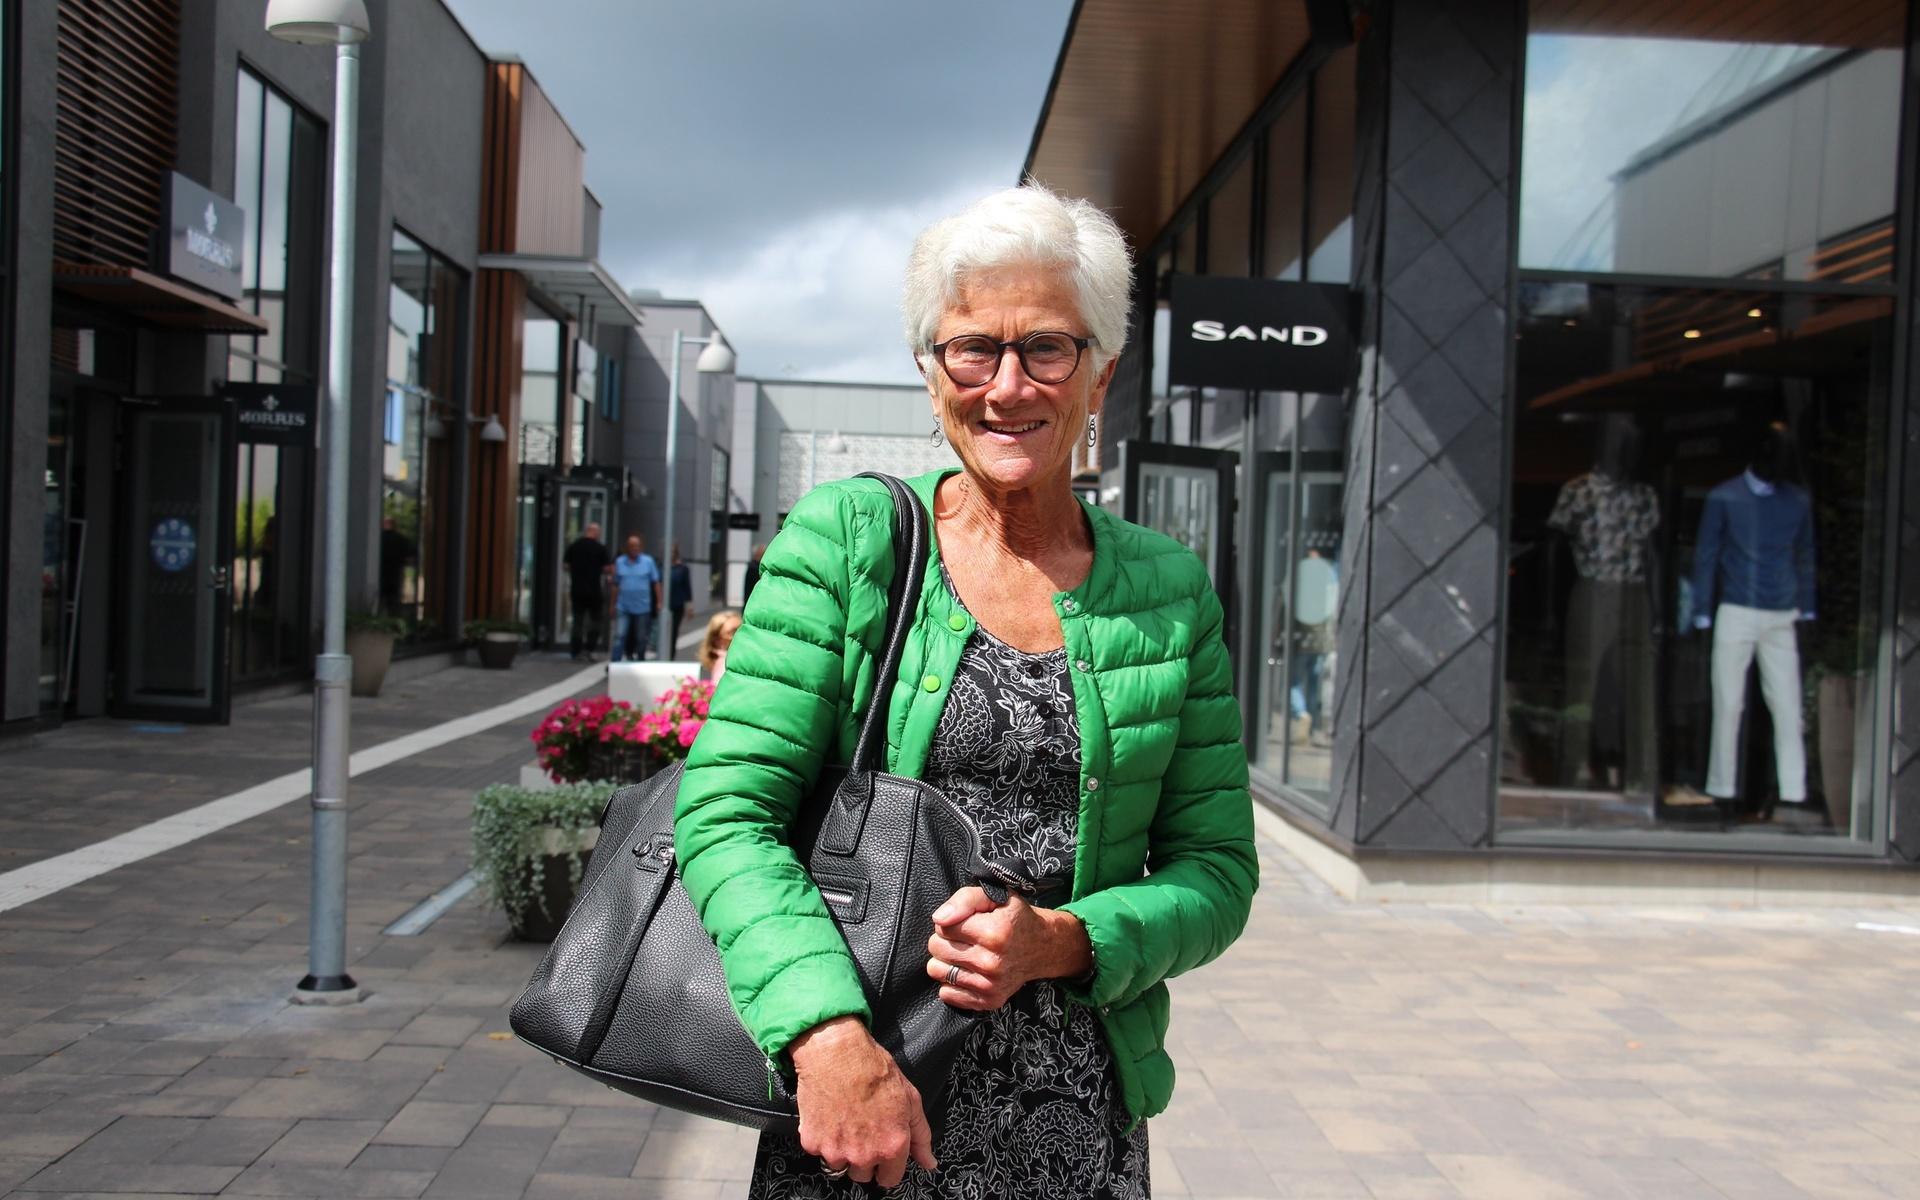 Karin Johansson, 73, brukar alltid ha med sig en påse eller väska när hon handlar. Idag har hon med sig en större skinnväska till Hede. ”Alla måste hjälpa till med sitt”, säger hon.